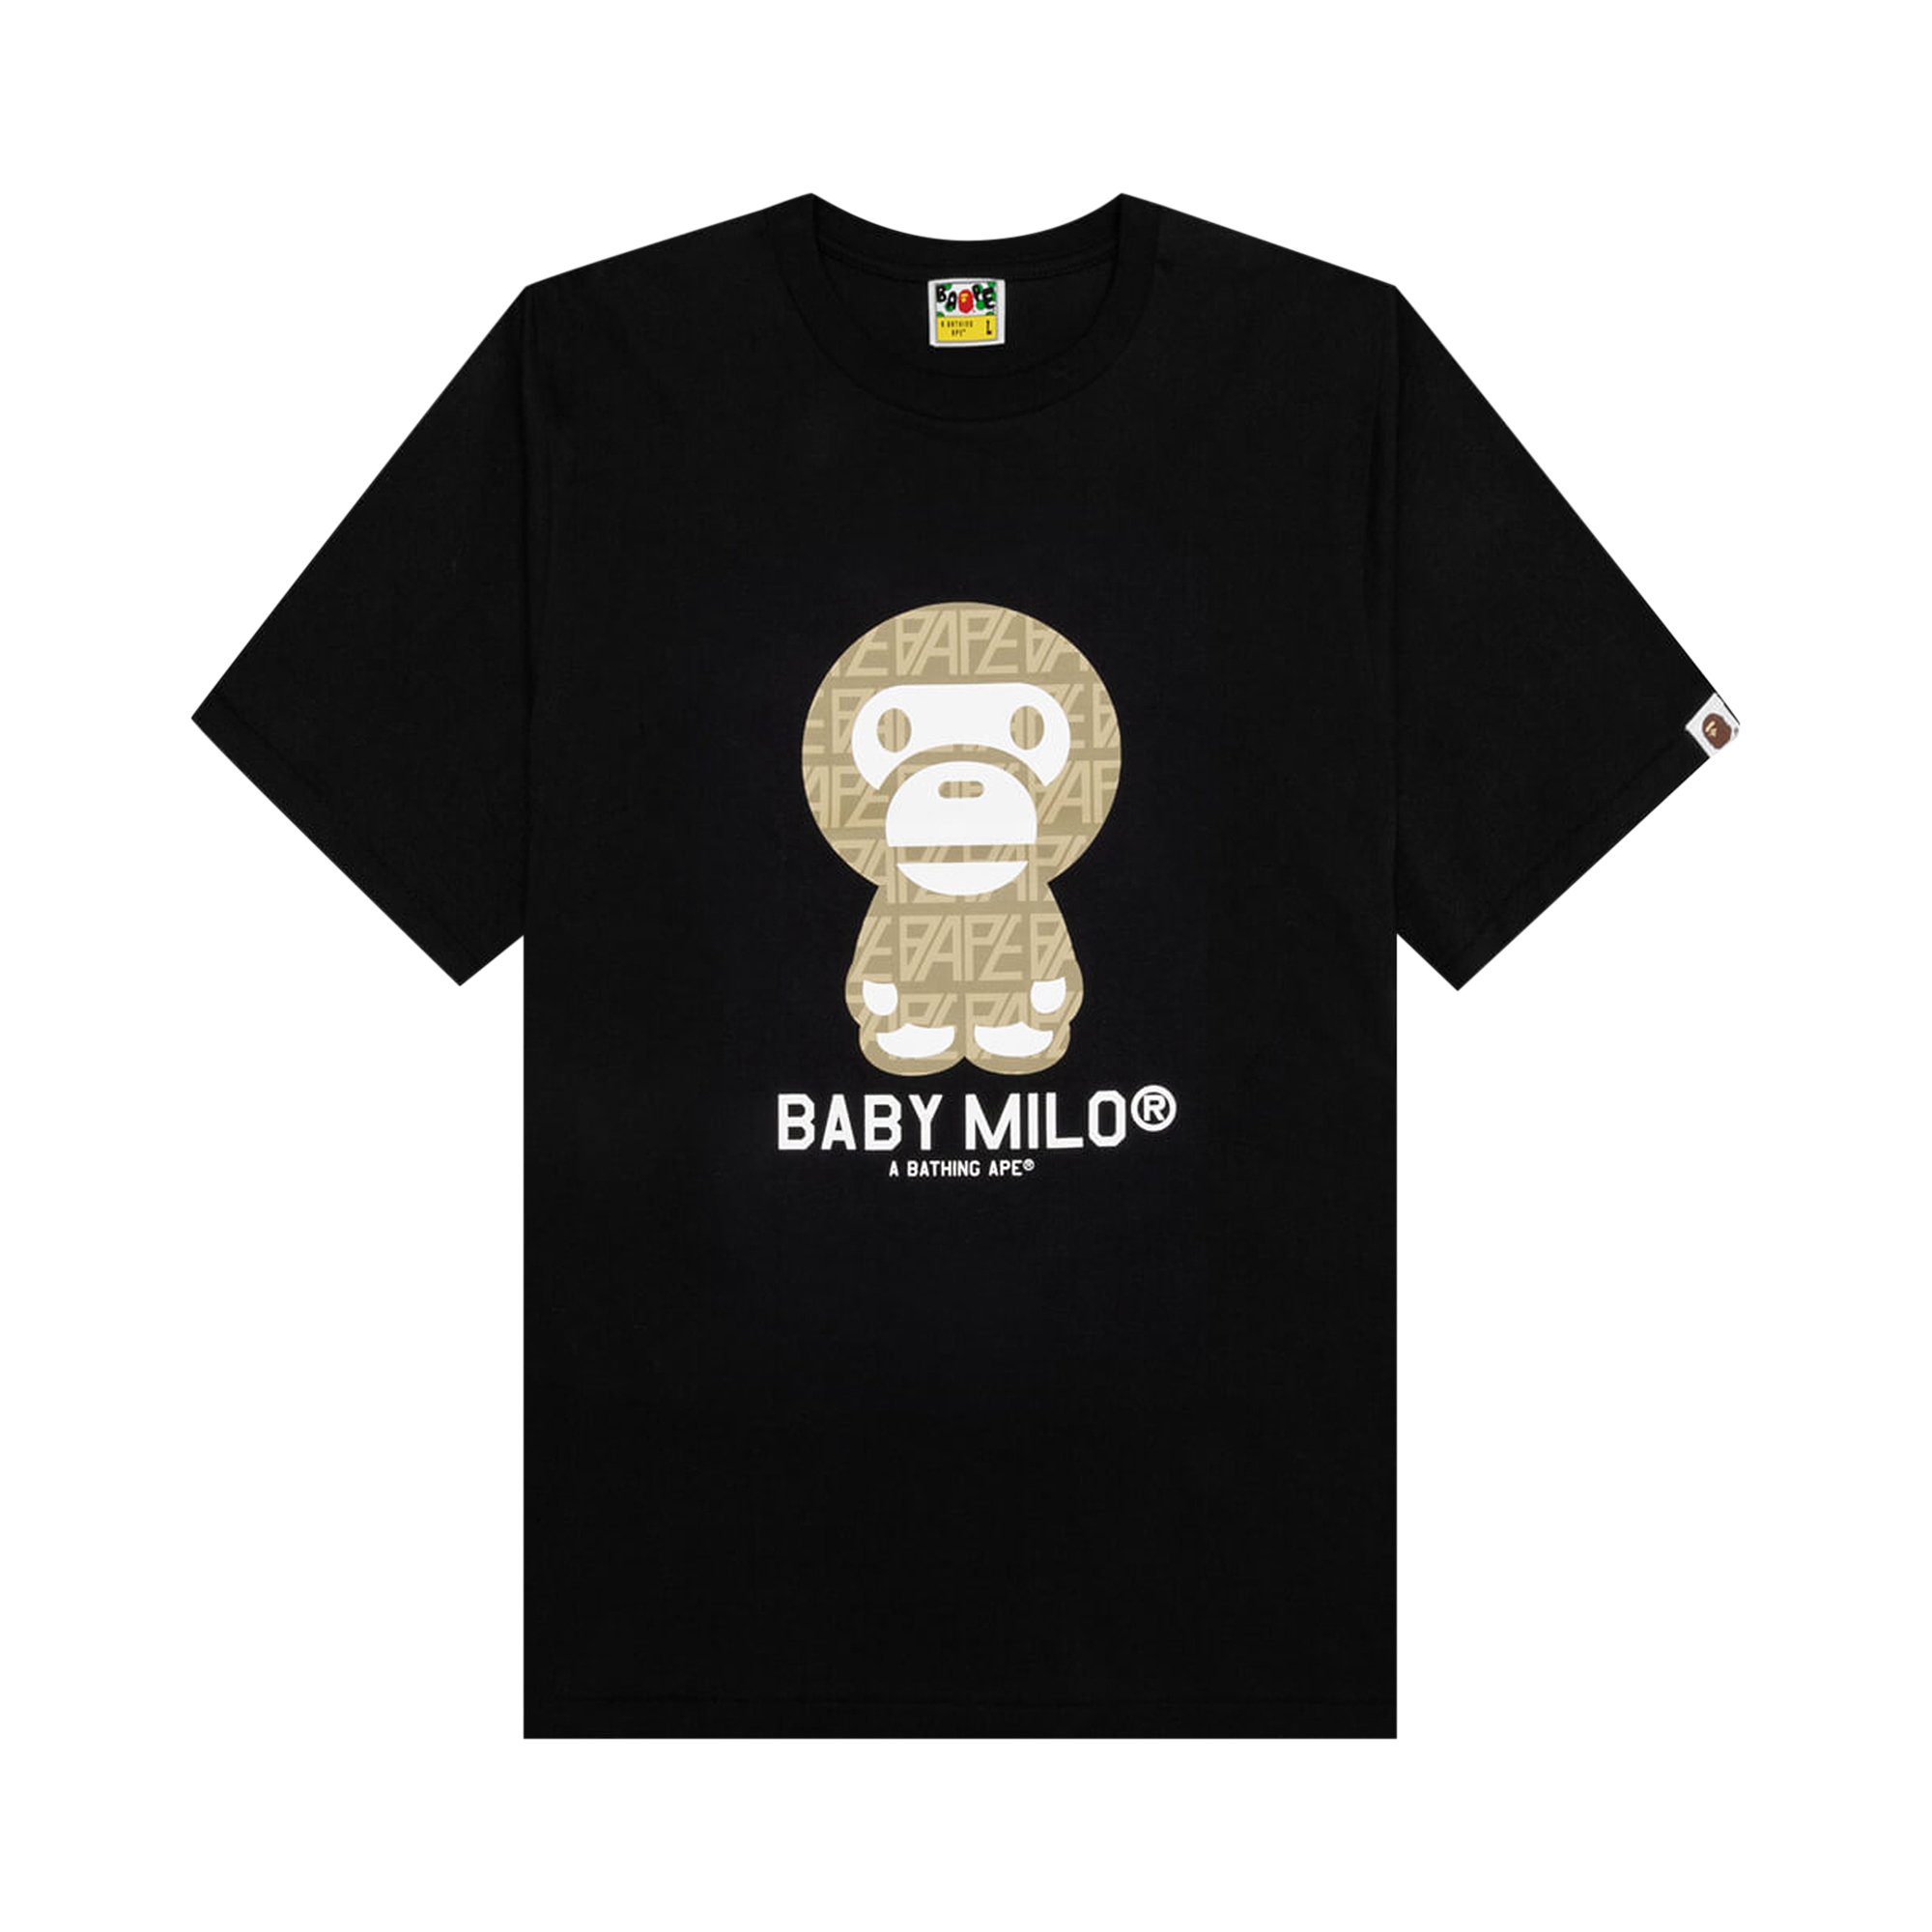 Футболка Baby Milo с логотипом BAPE, цвет Черный/Бежевый